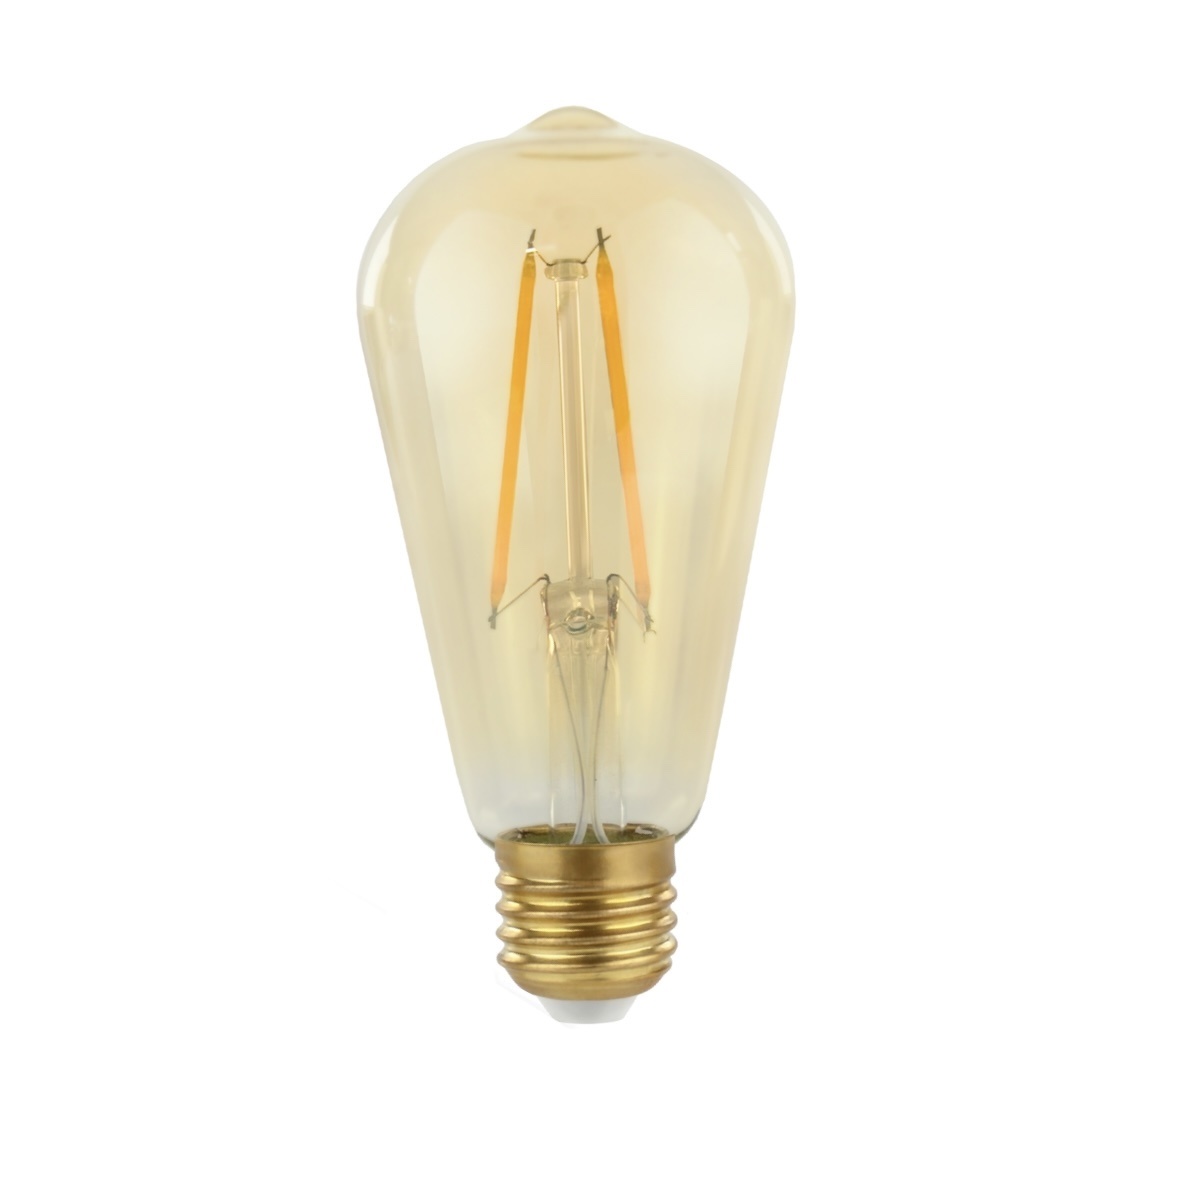 Voordeelpak 10 stuks E27 LED lamp - 2W vervangt - Ledlichtdiscounter.nl